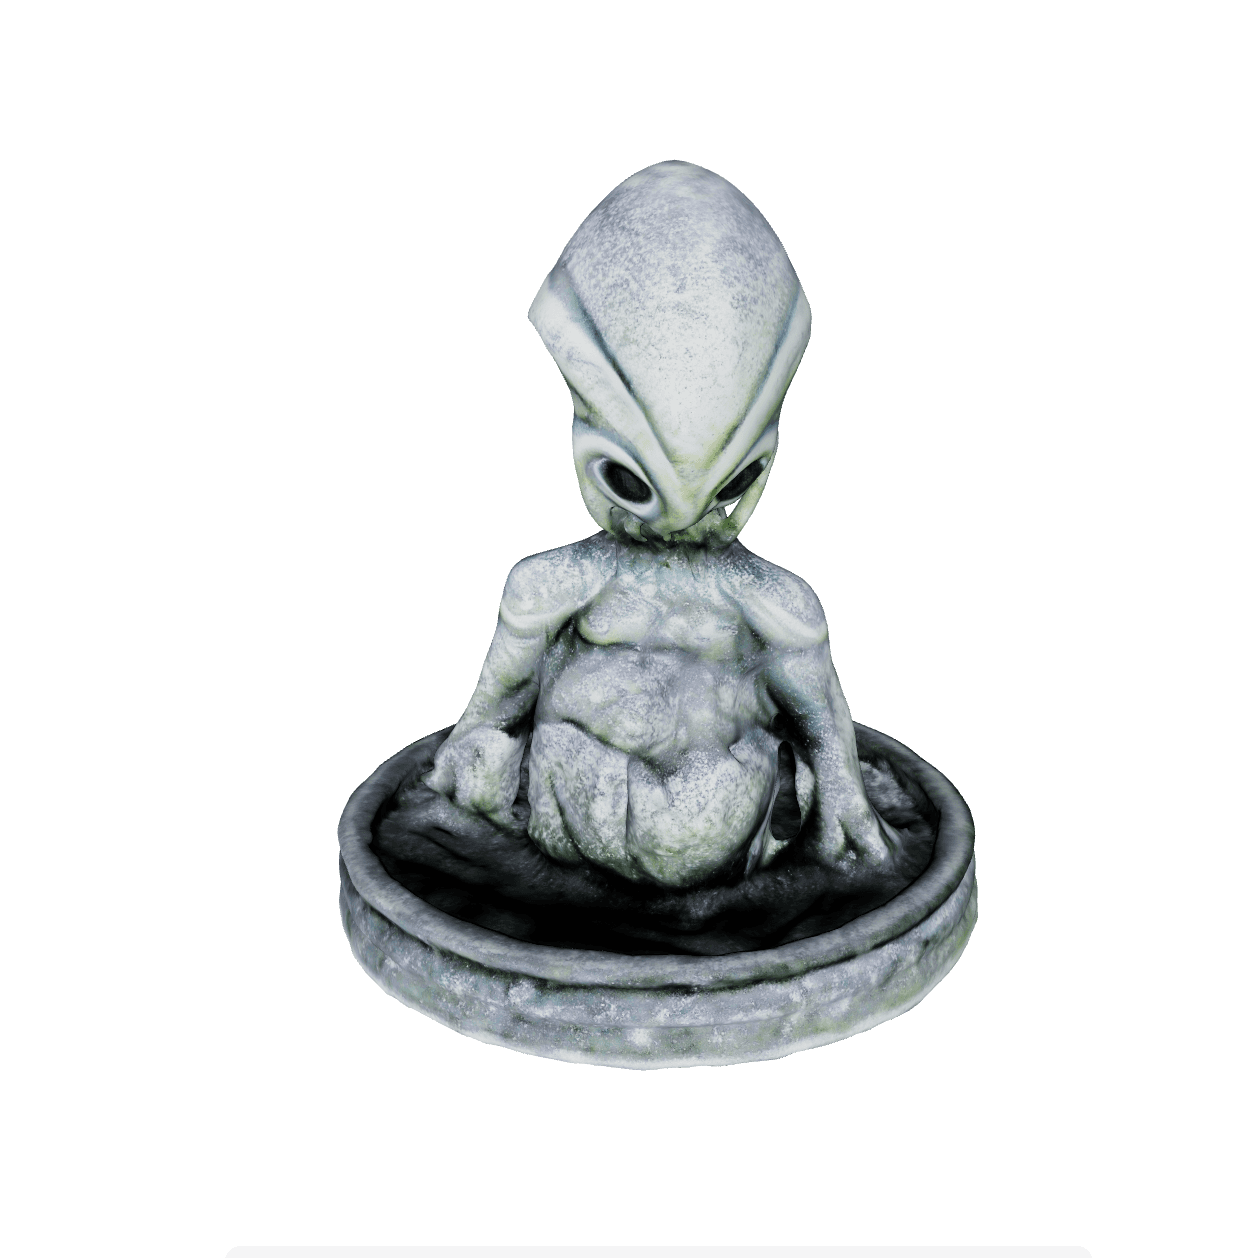 Alien Fertility Statue 2 3d model